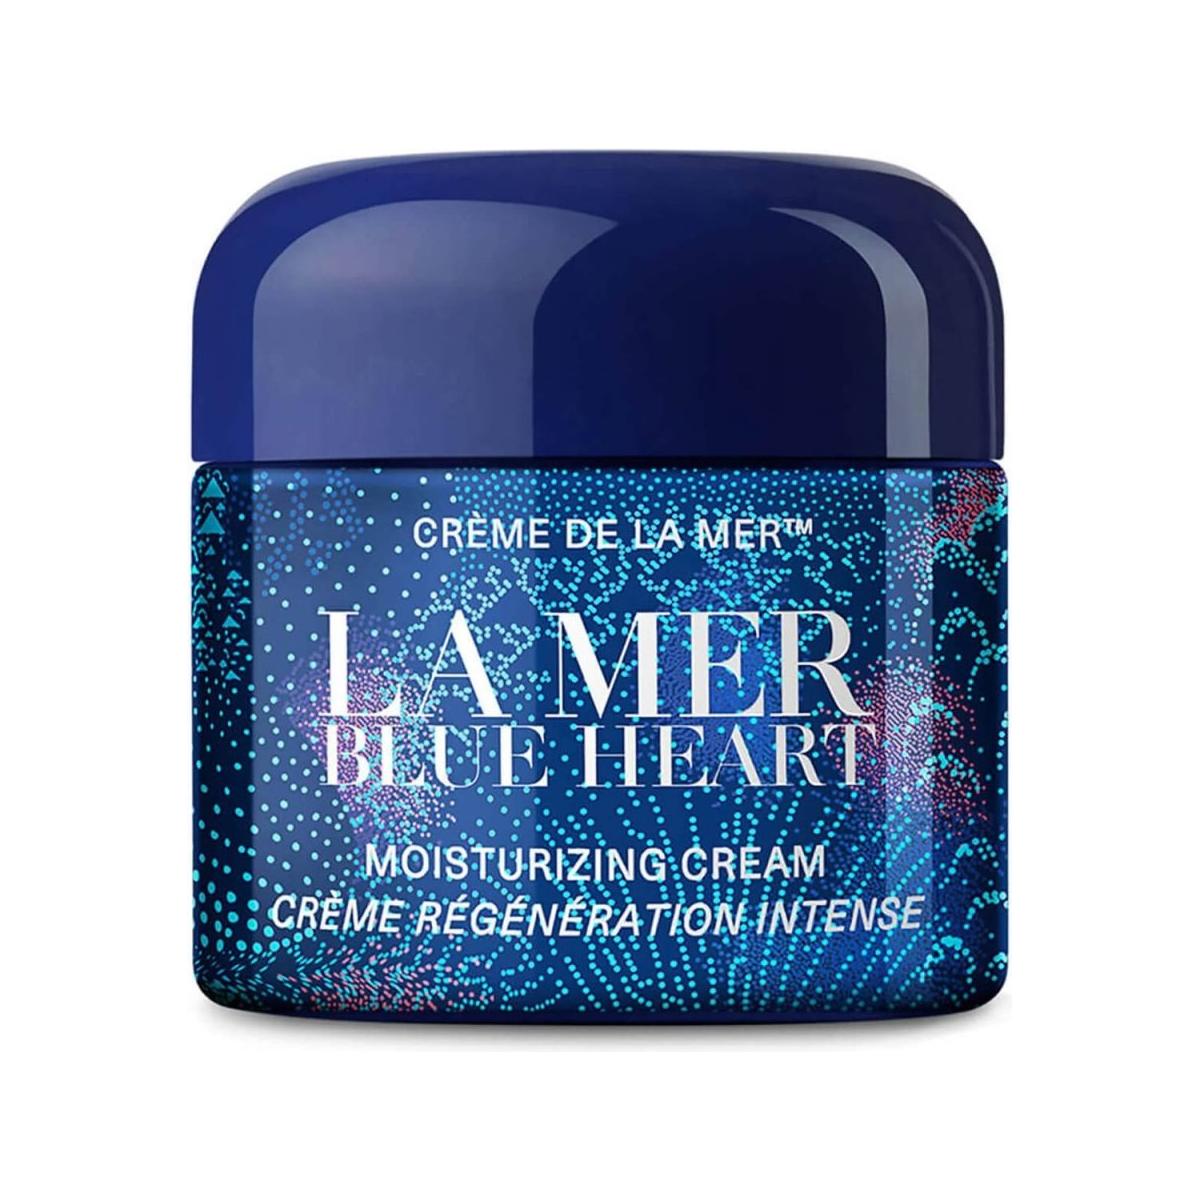 La Mer The Blue Heart Crème 60ml - DG International Ventures Limited